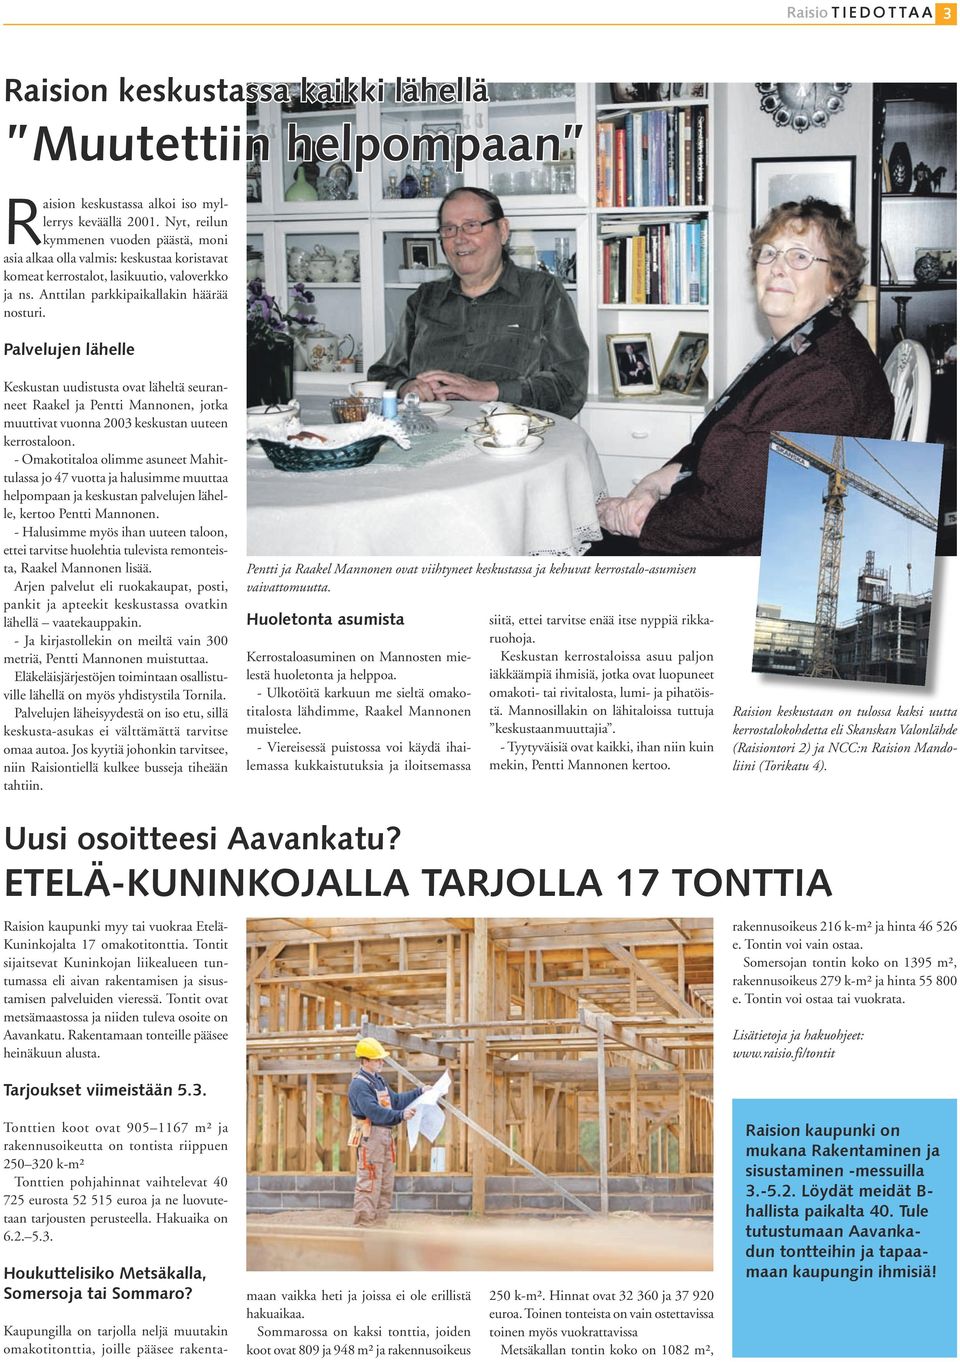 Palvelujen lähelle Keskustan uudistusta ovat läheltä seuranneet Raakel ja Pentti Mannonen, jotka muuttivat vuonna 2003 keskustan uuteen kerrostaloon.